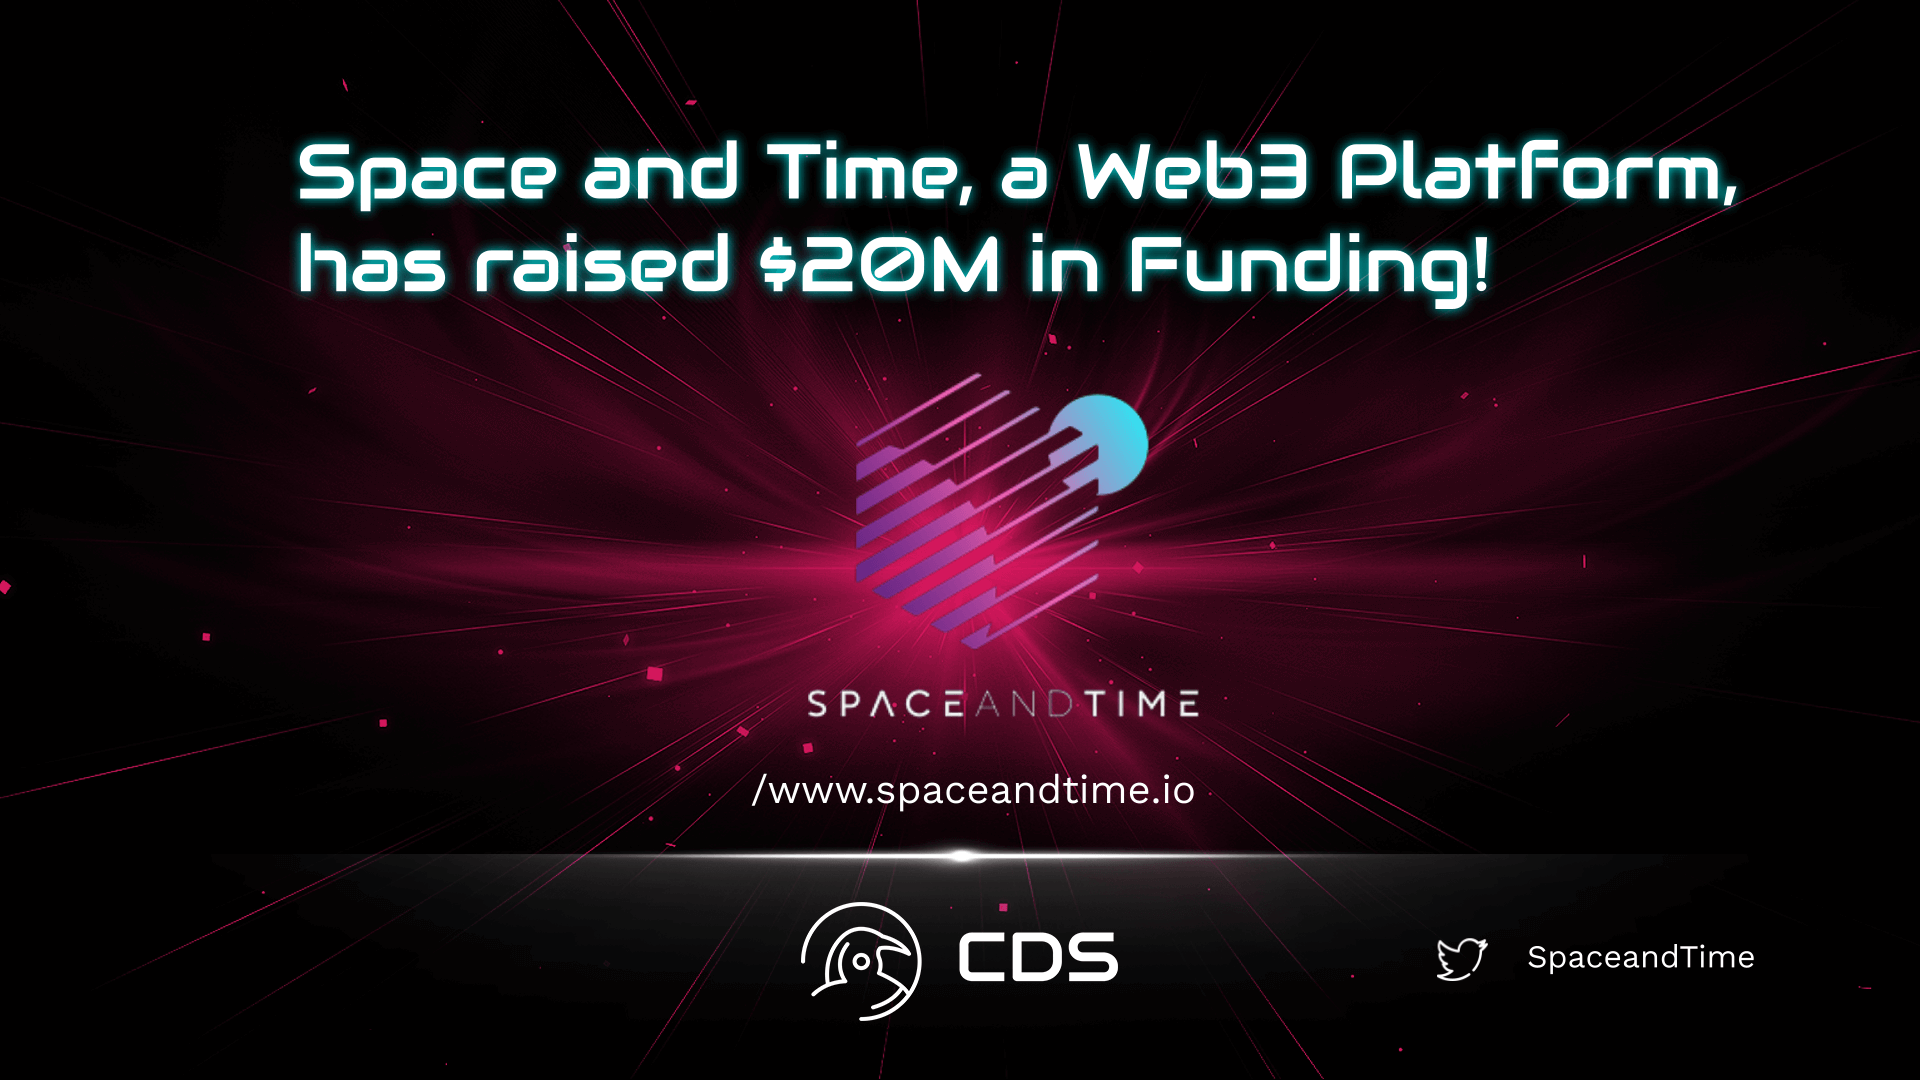 spaceandtime fundraise bc523ea0